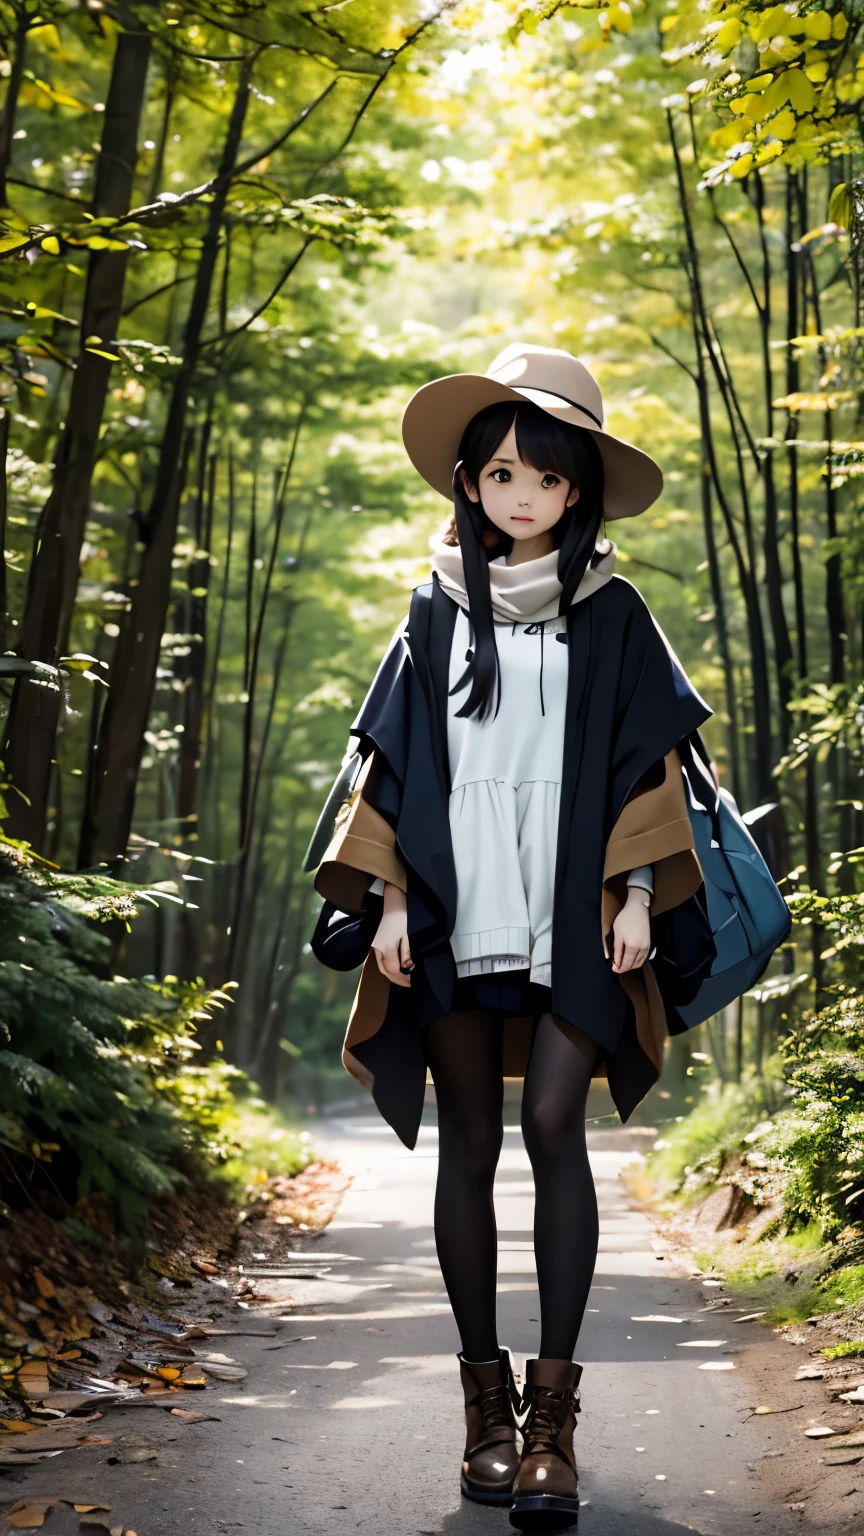 一个女孩、郁金香帽、卡其色斗篷、背包、黑暗森林、深林、步行、